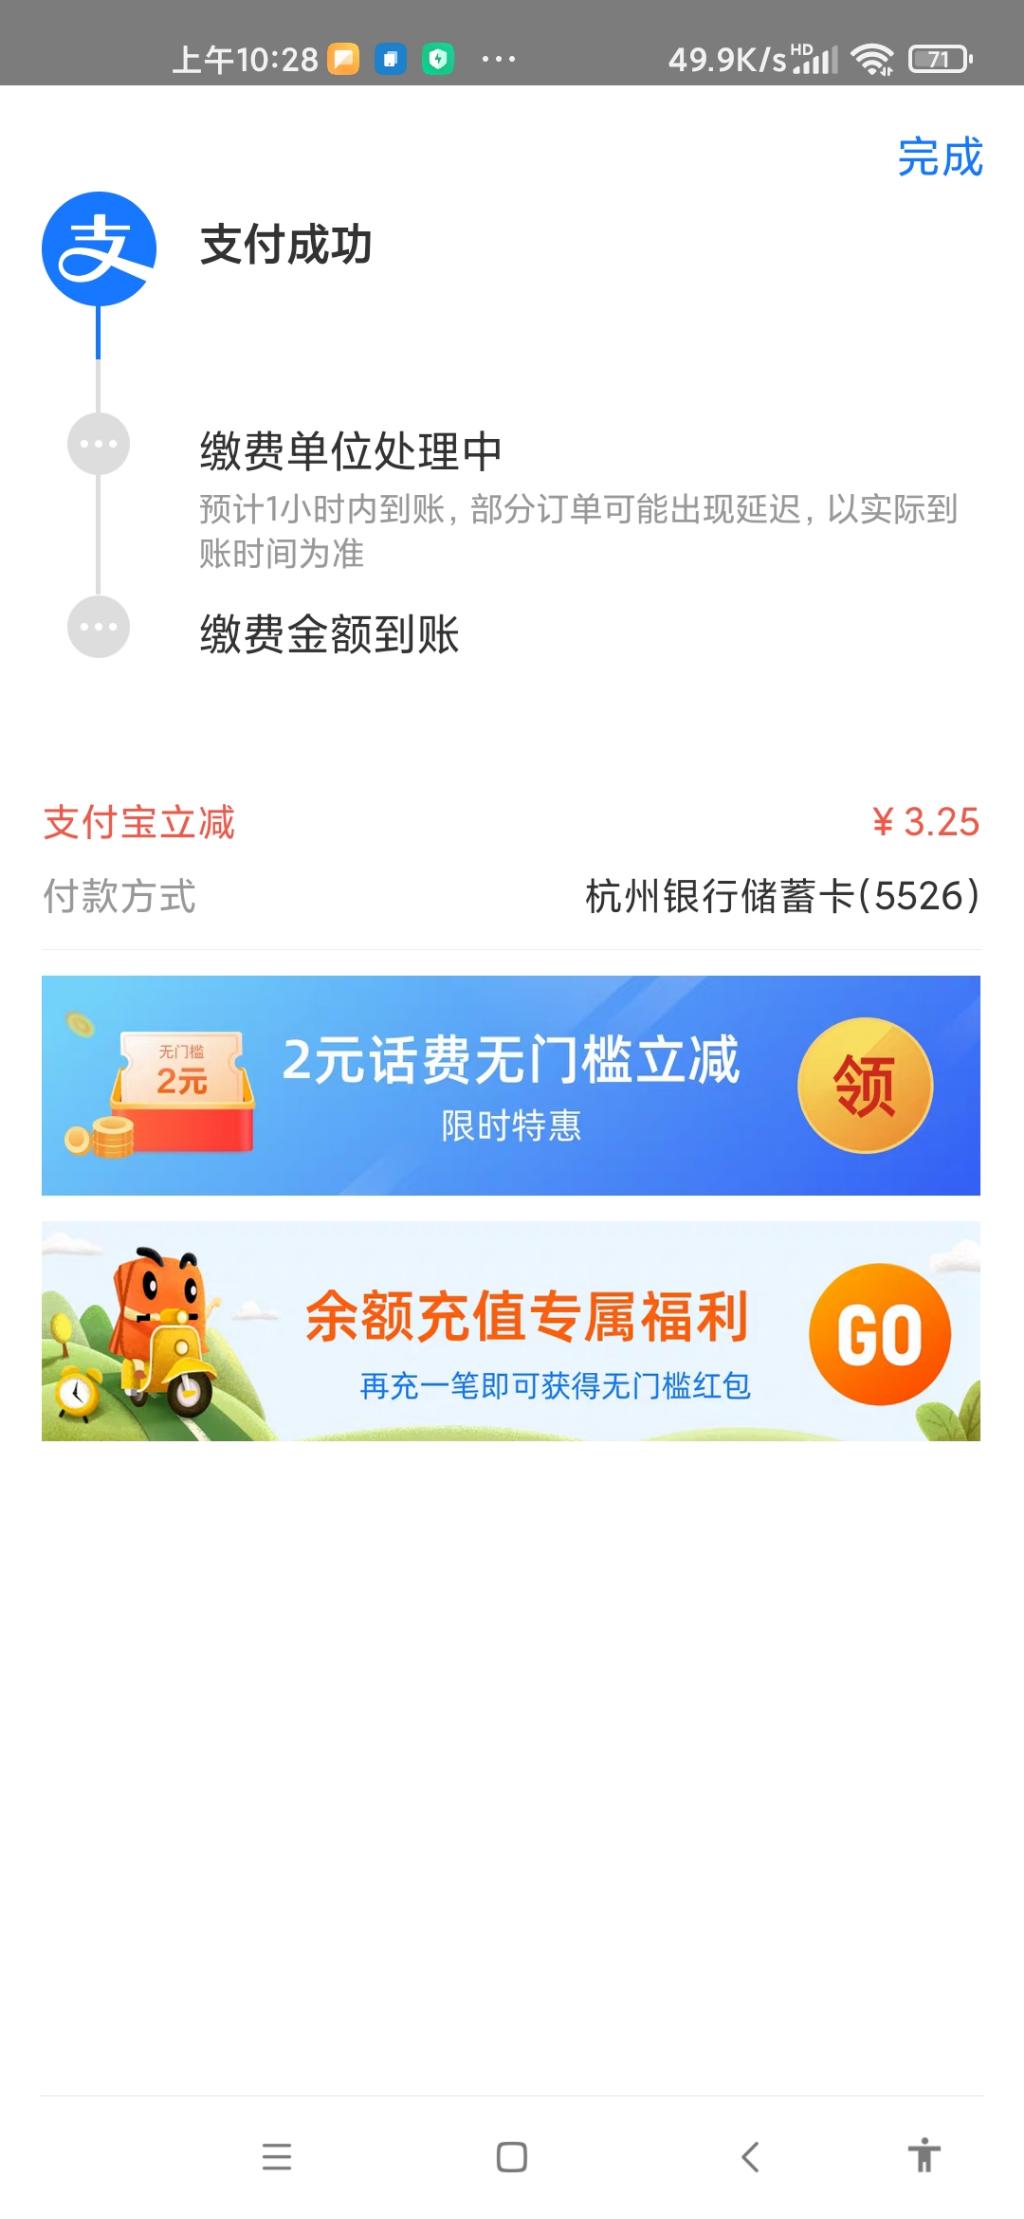 杭州银行电费立减-充的10-2天都有。-惠小助(52huixz.com)